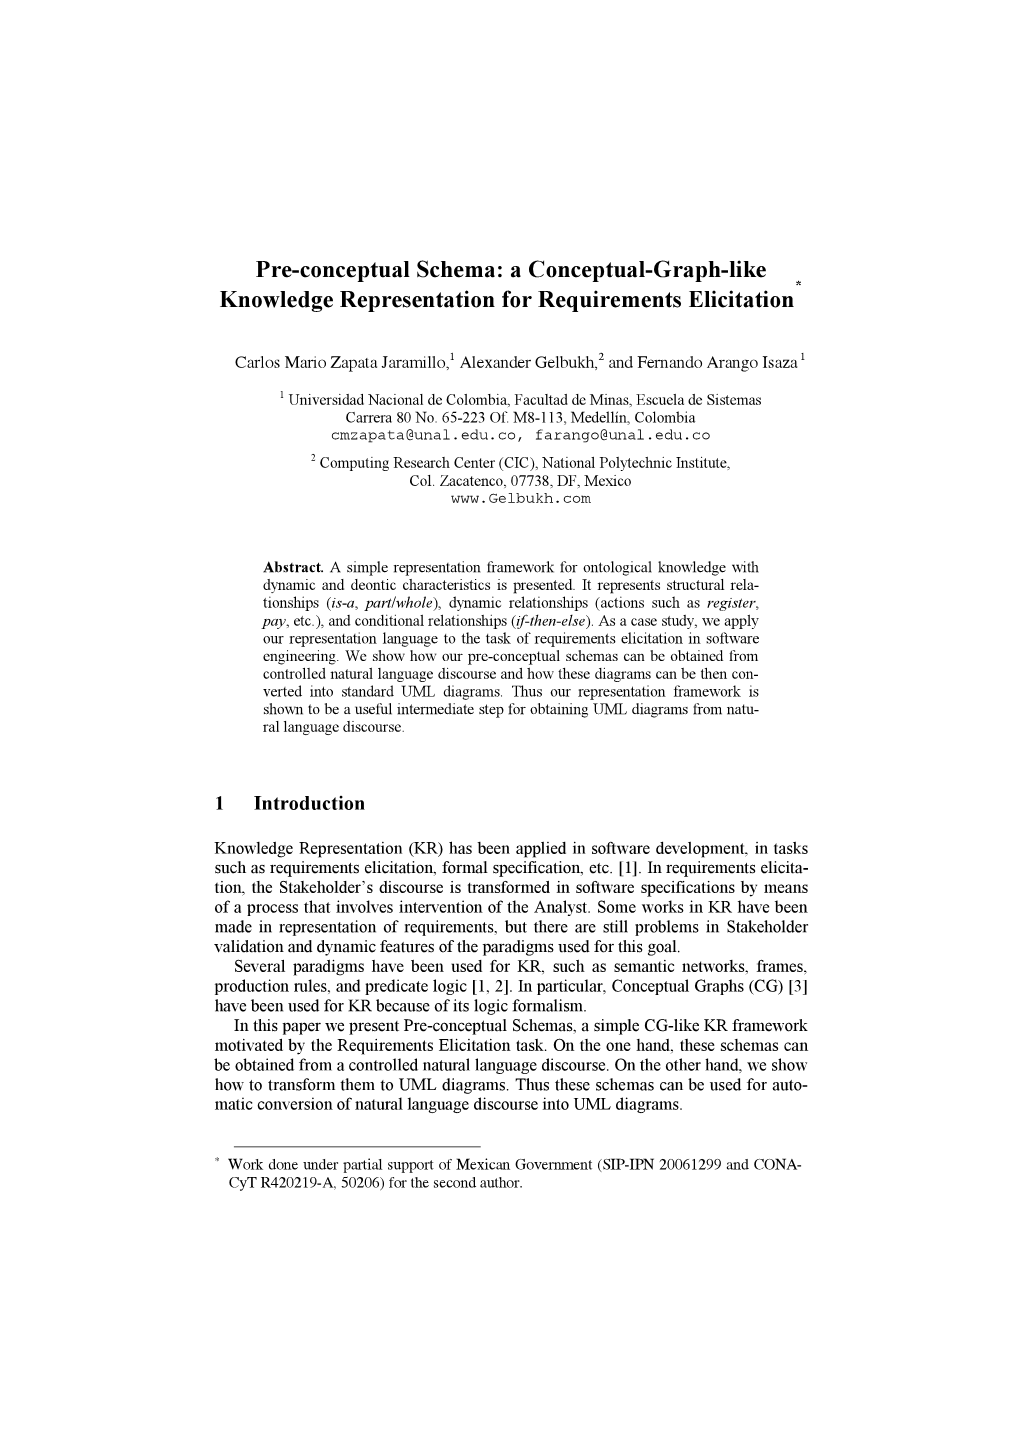 Pre-Conceptual Schema: a Conceptual-Graph-Like * Knowledge Representation for Requirements Elicitation